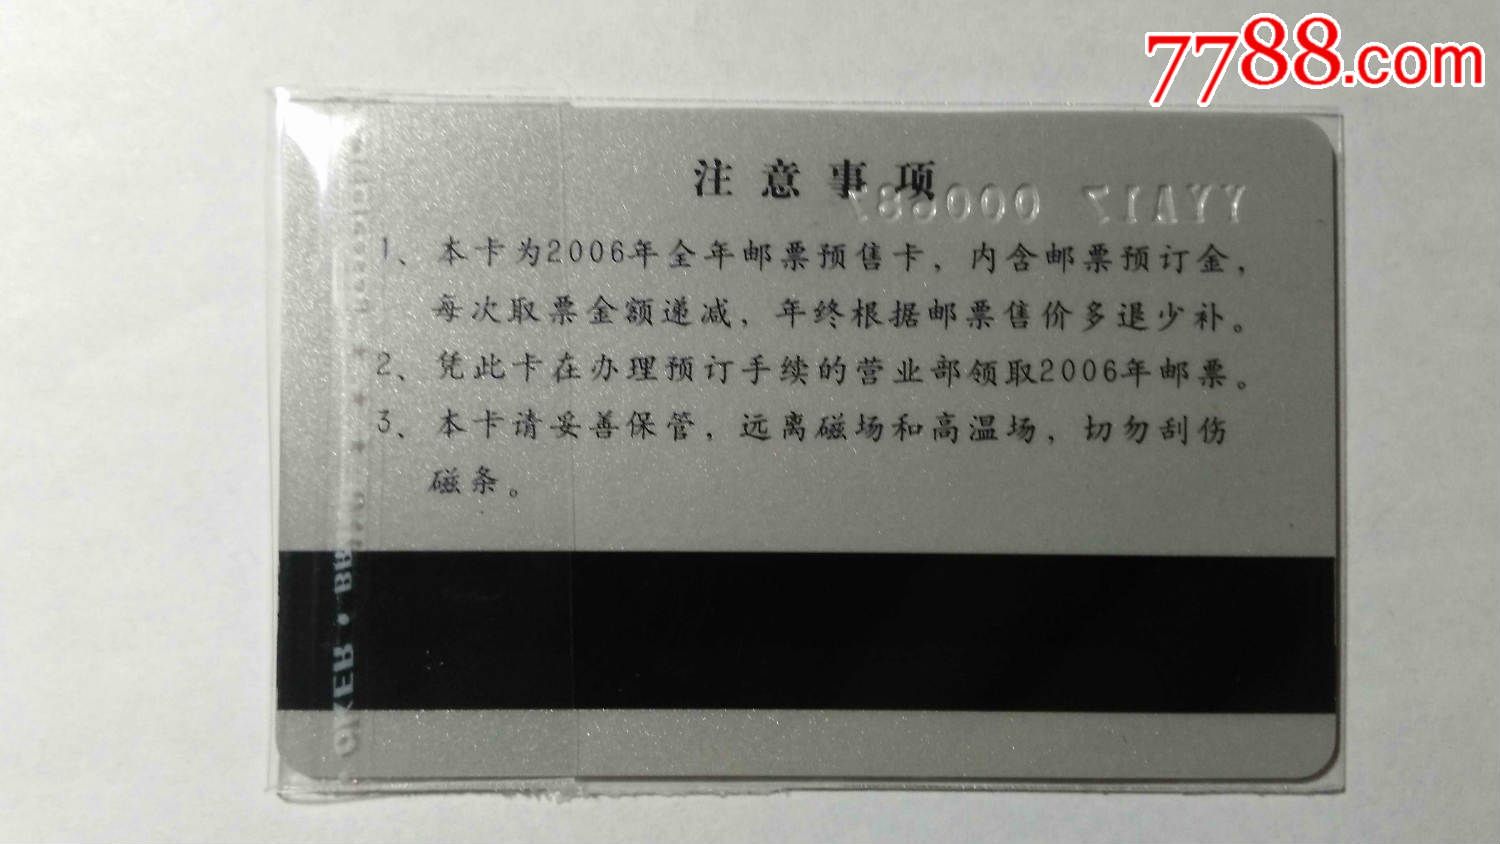 北京市西区邮票公司---2006集邮预售卡-价格:1